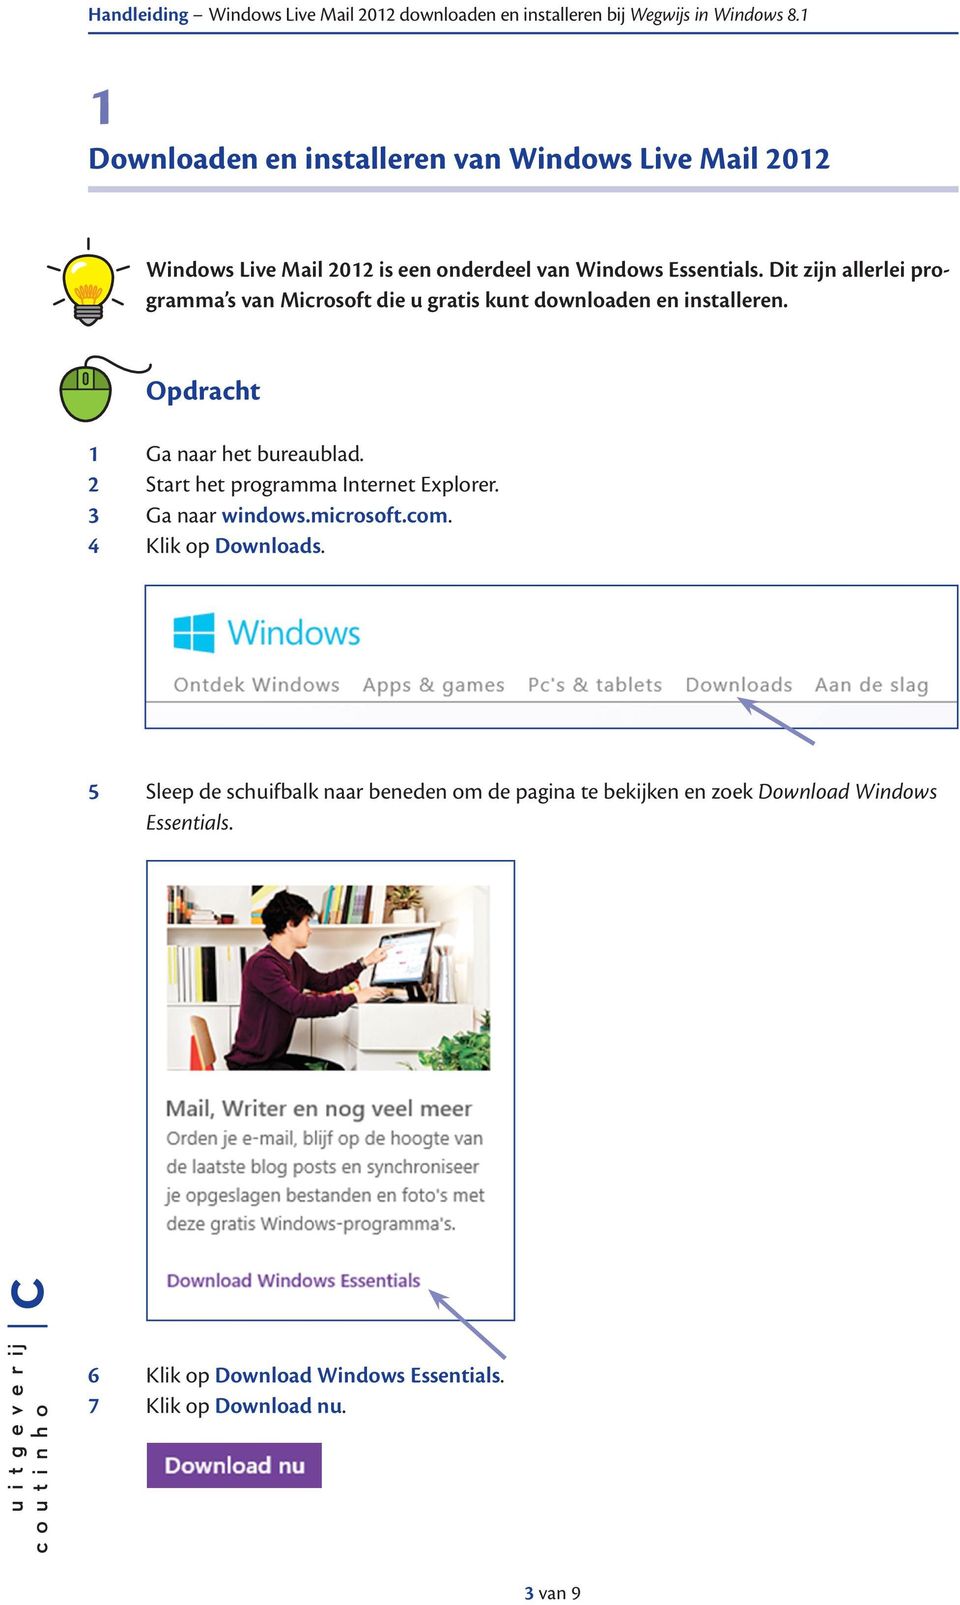 2 Start het programma Internet Explorer. 3 Ga naar windows.microsoft.com. 4 Klik op Downloads.